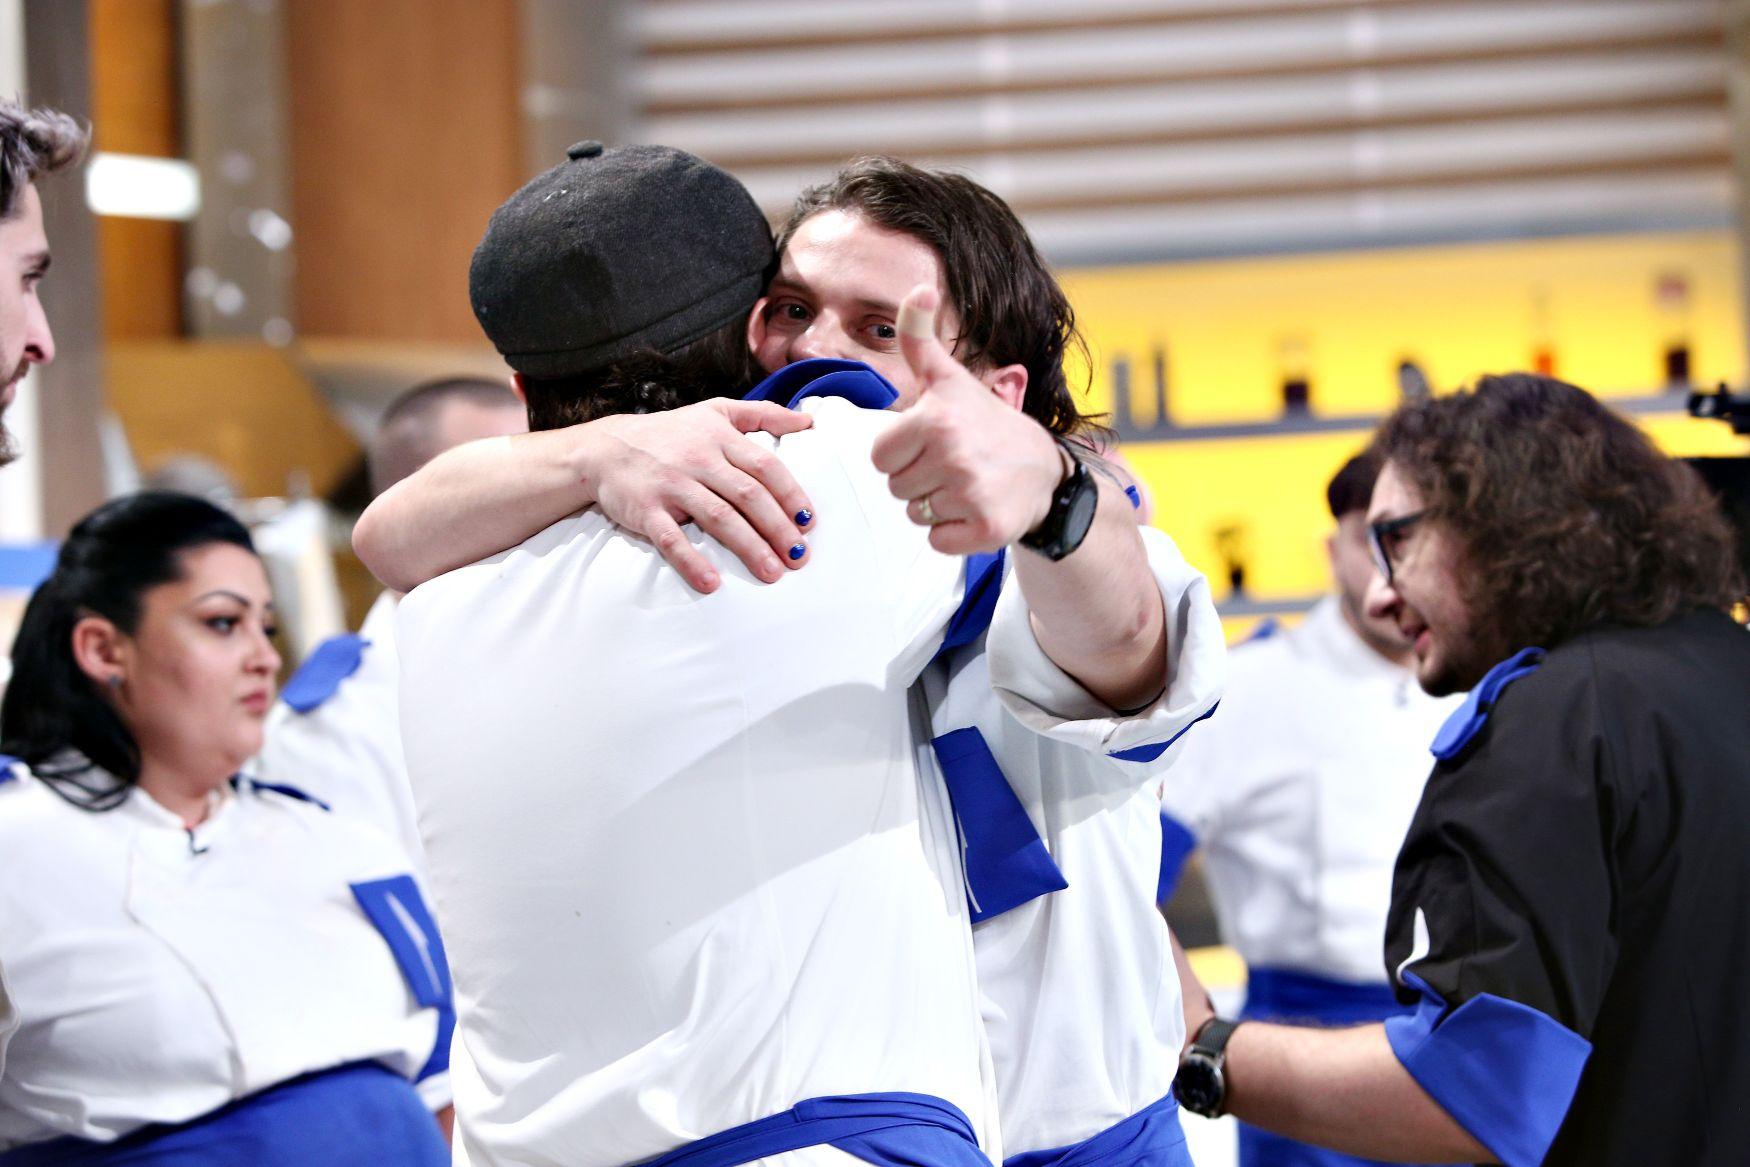 Concurenții echipei albastre îmbrățișându-se